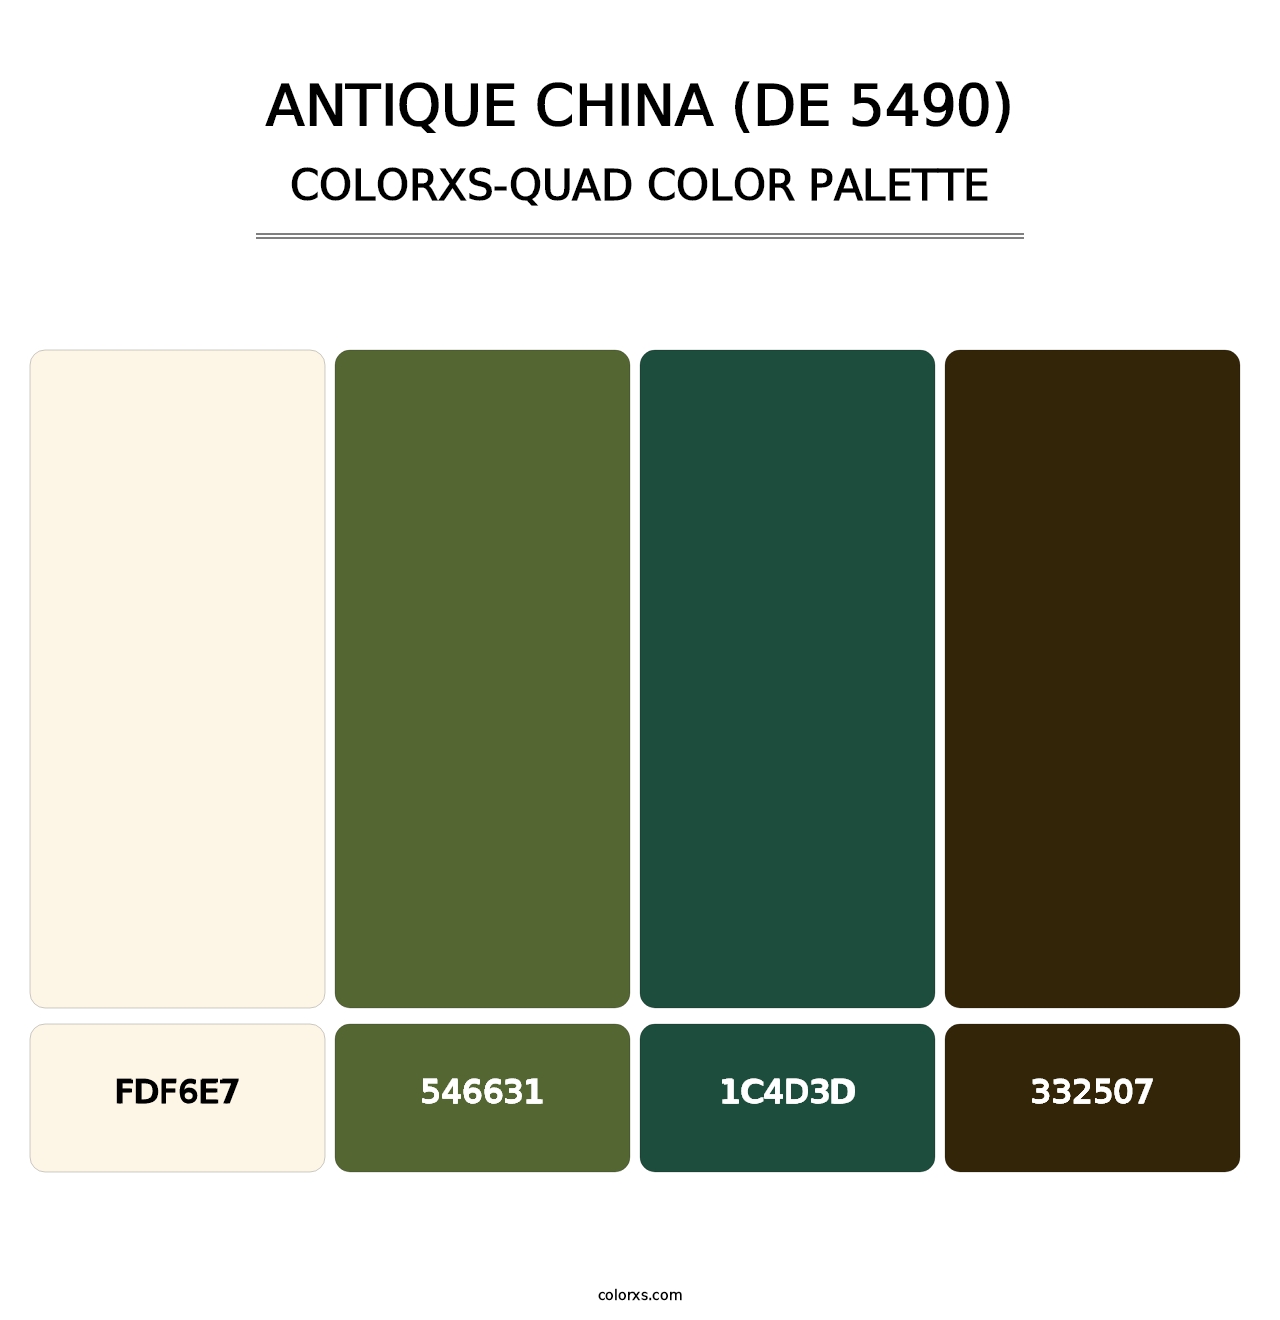 Antique China (DE 5490) - Colorxs Quad Palette